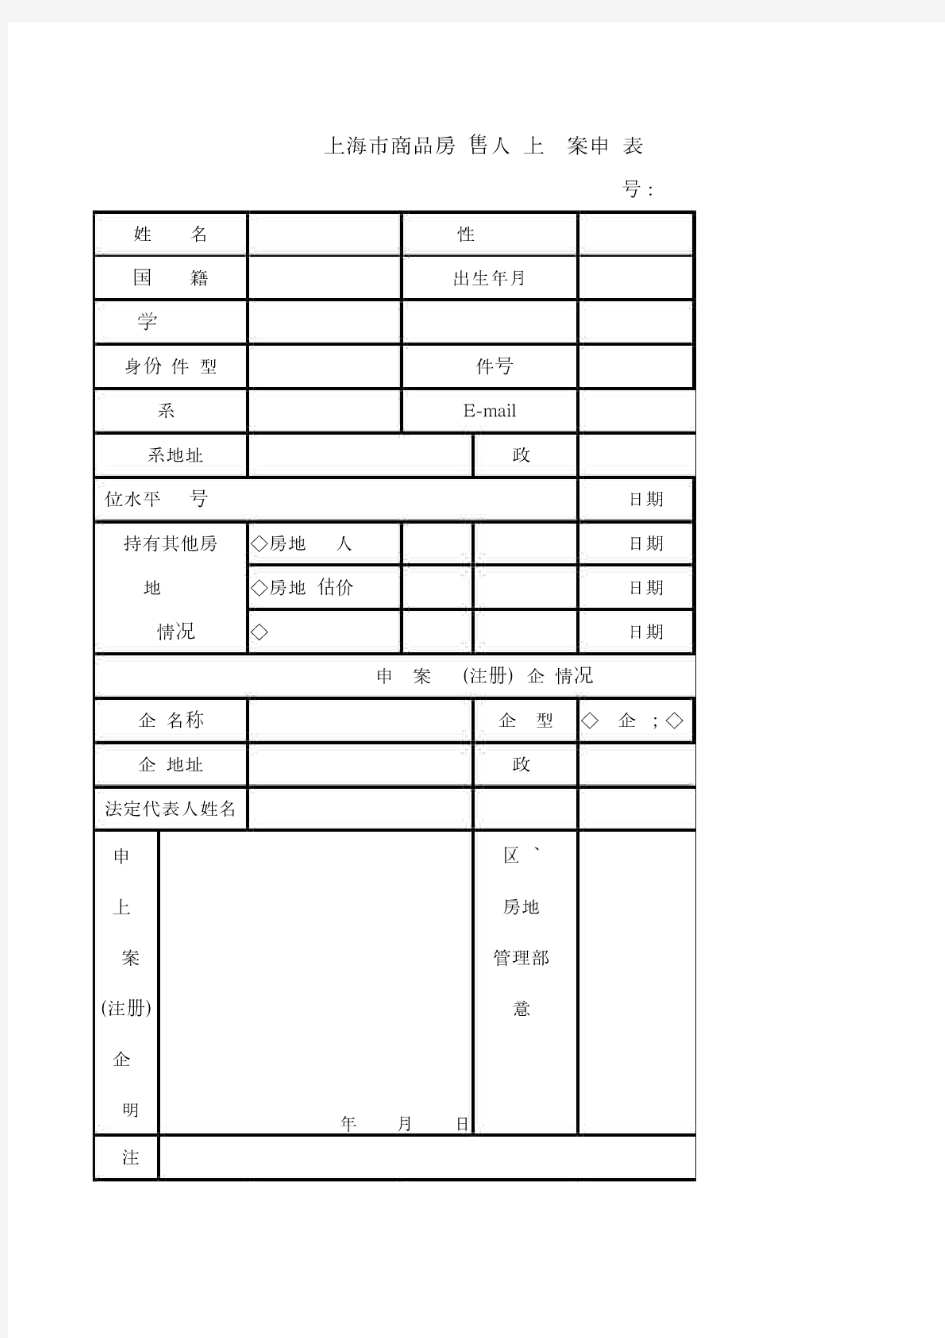 上海市商品房销售人员上岗备案申请表